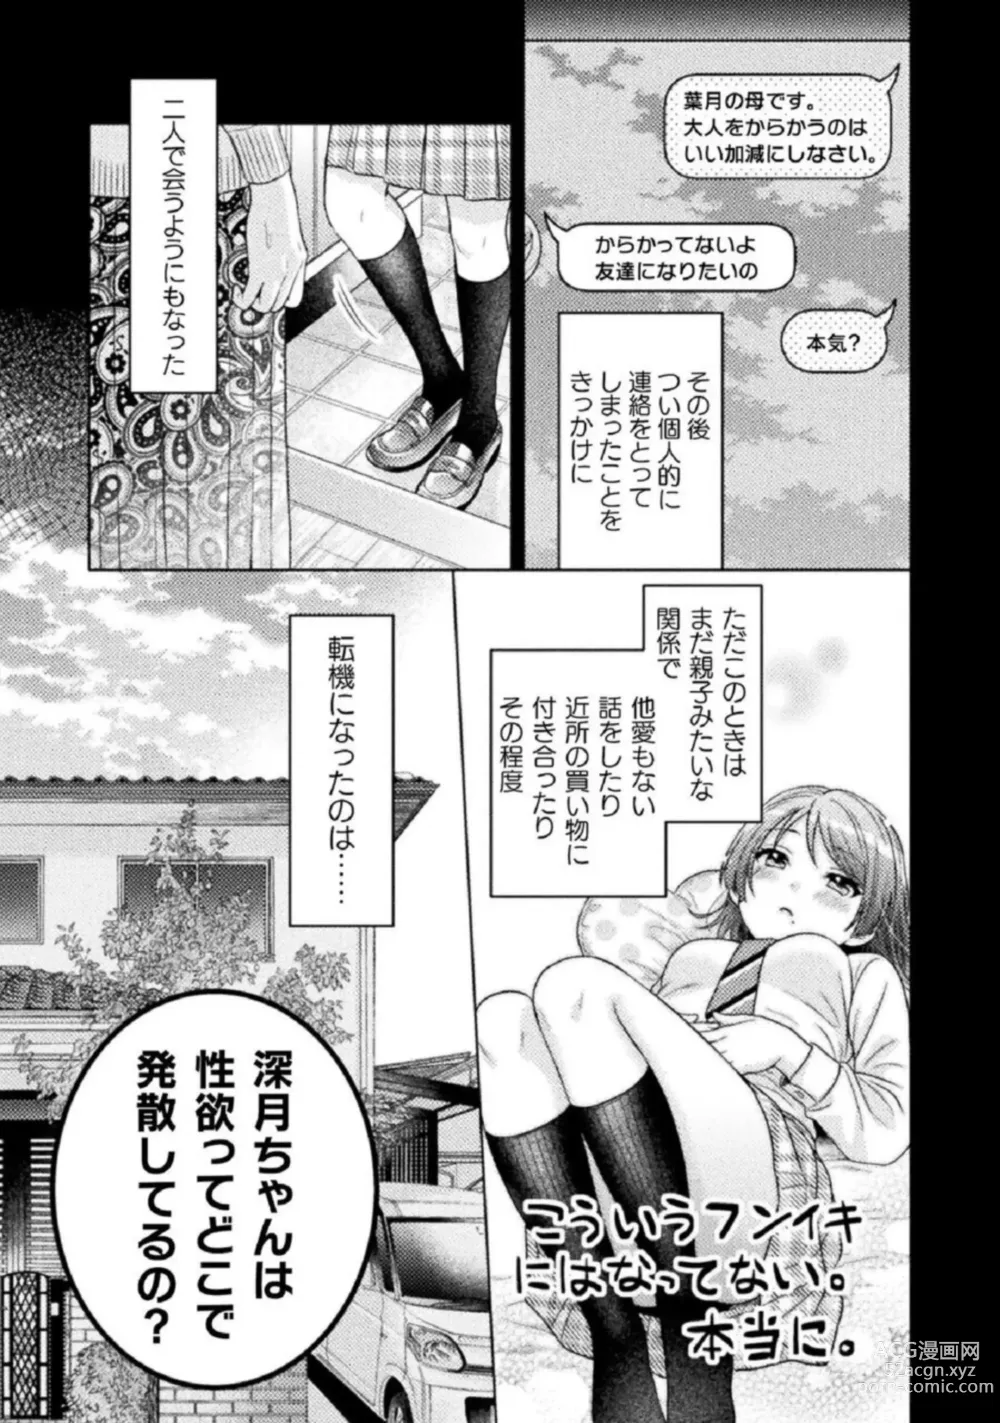 Page 39 of manga Hitozuma to JK 1